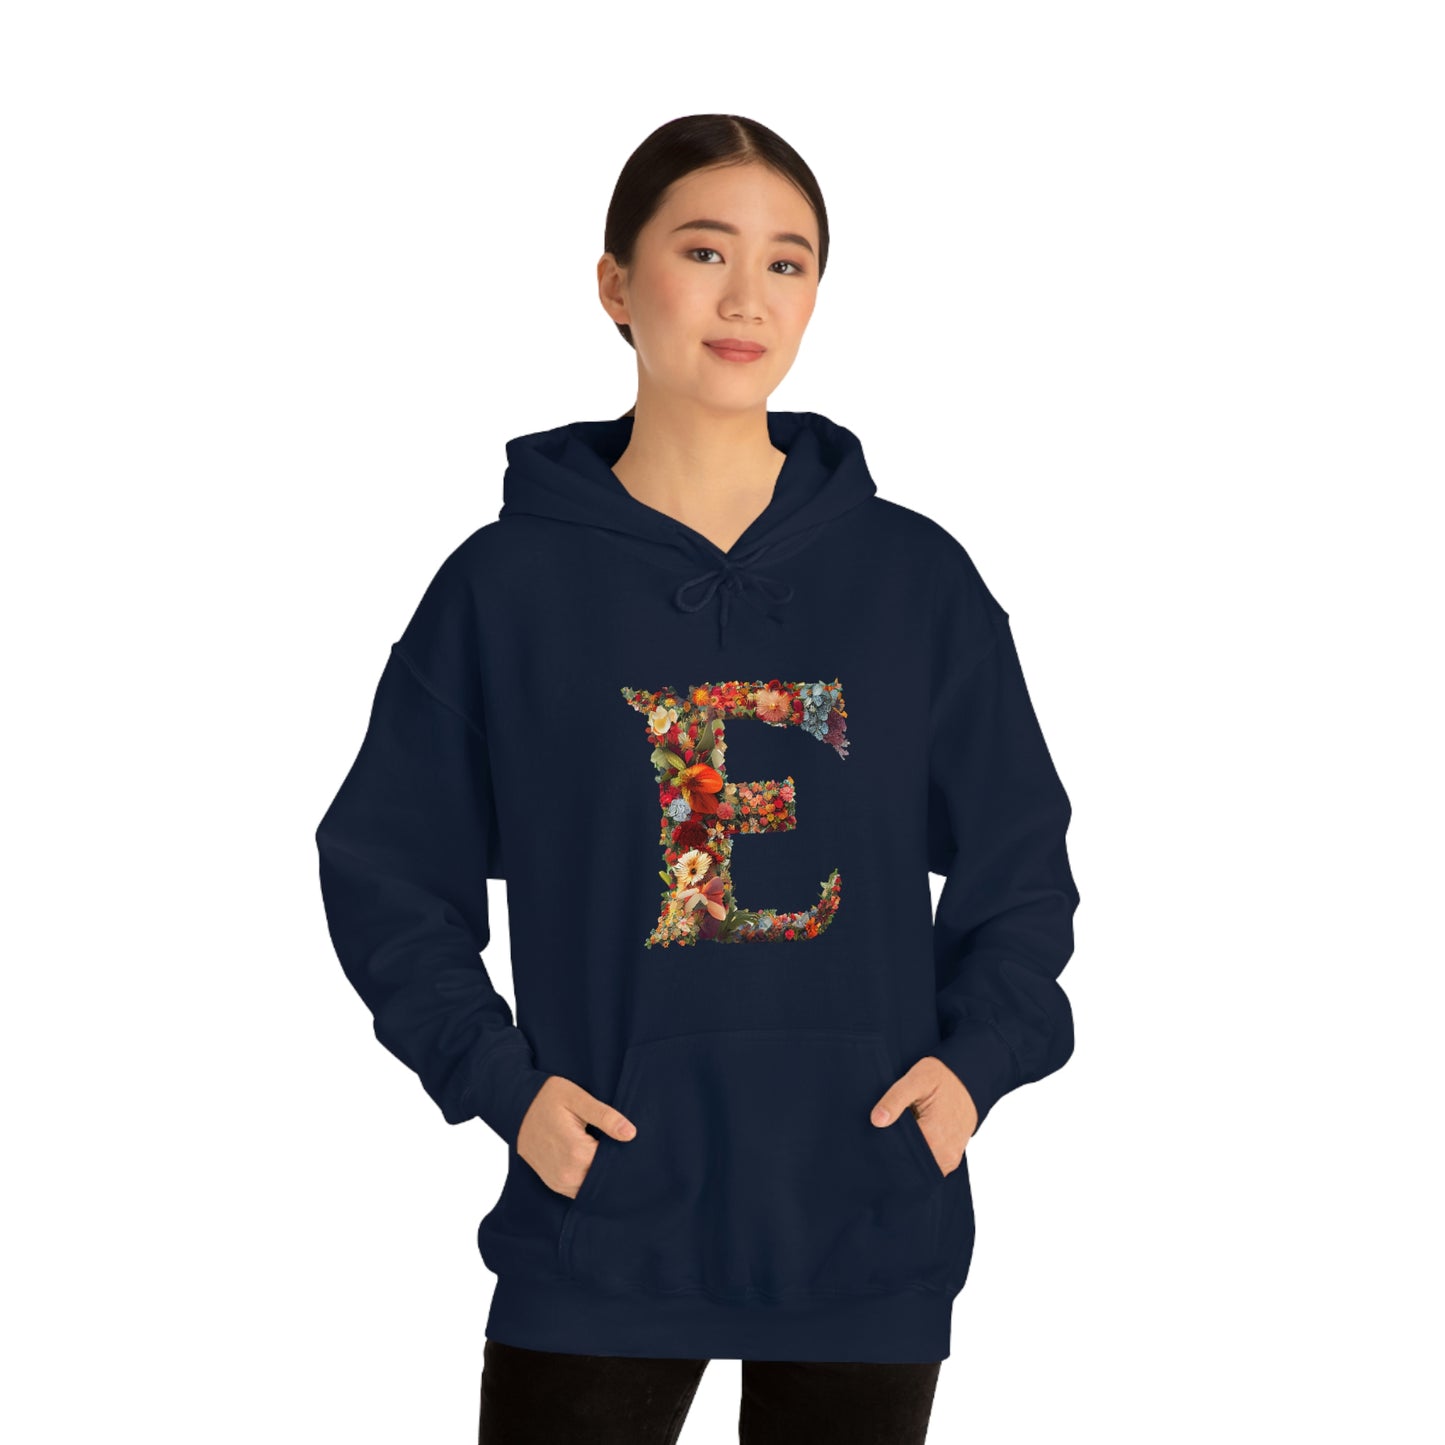 Unisex Heavy Blend™ Hooded Sweatshirt "E"